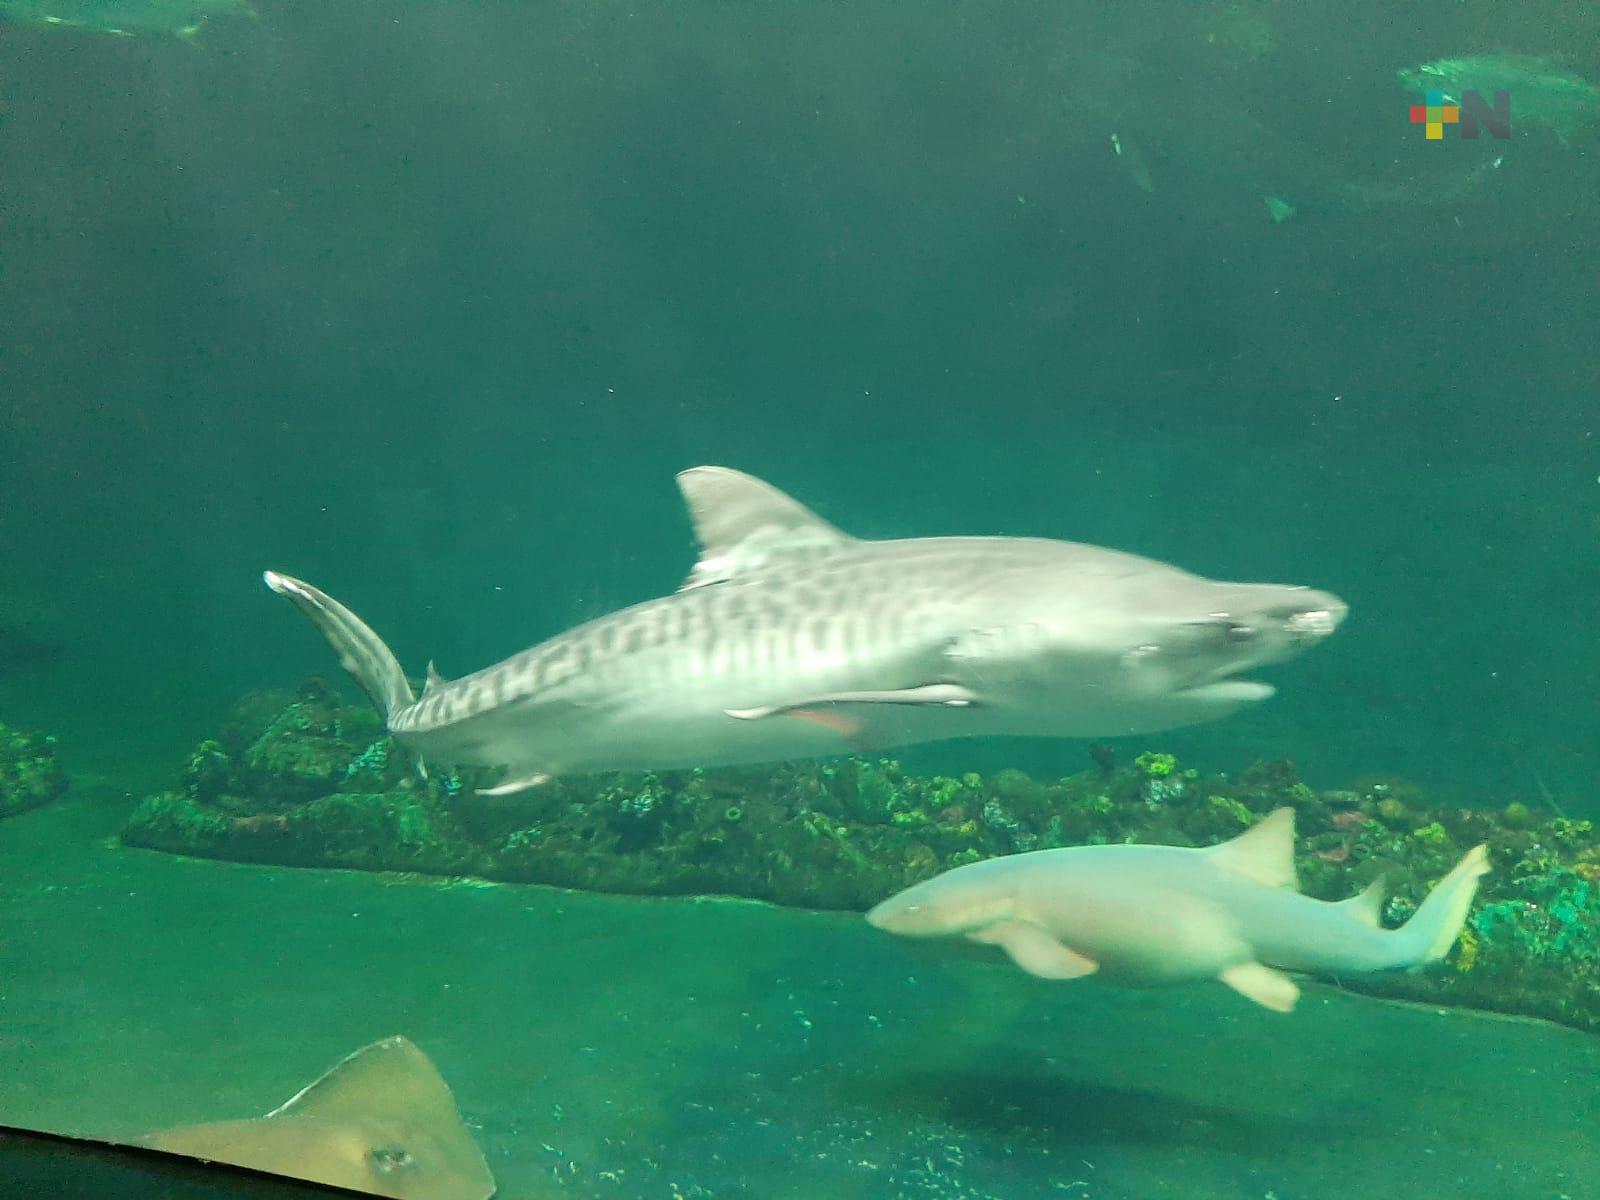 Prestadores de servicios turísticos promoverán visitas al Aquarium de Veracruz